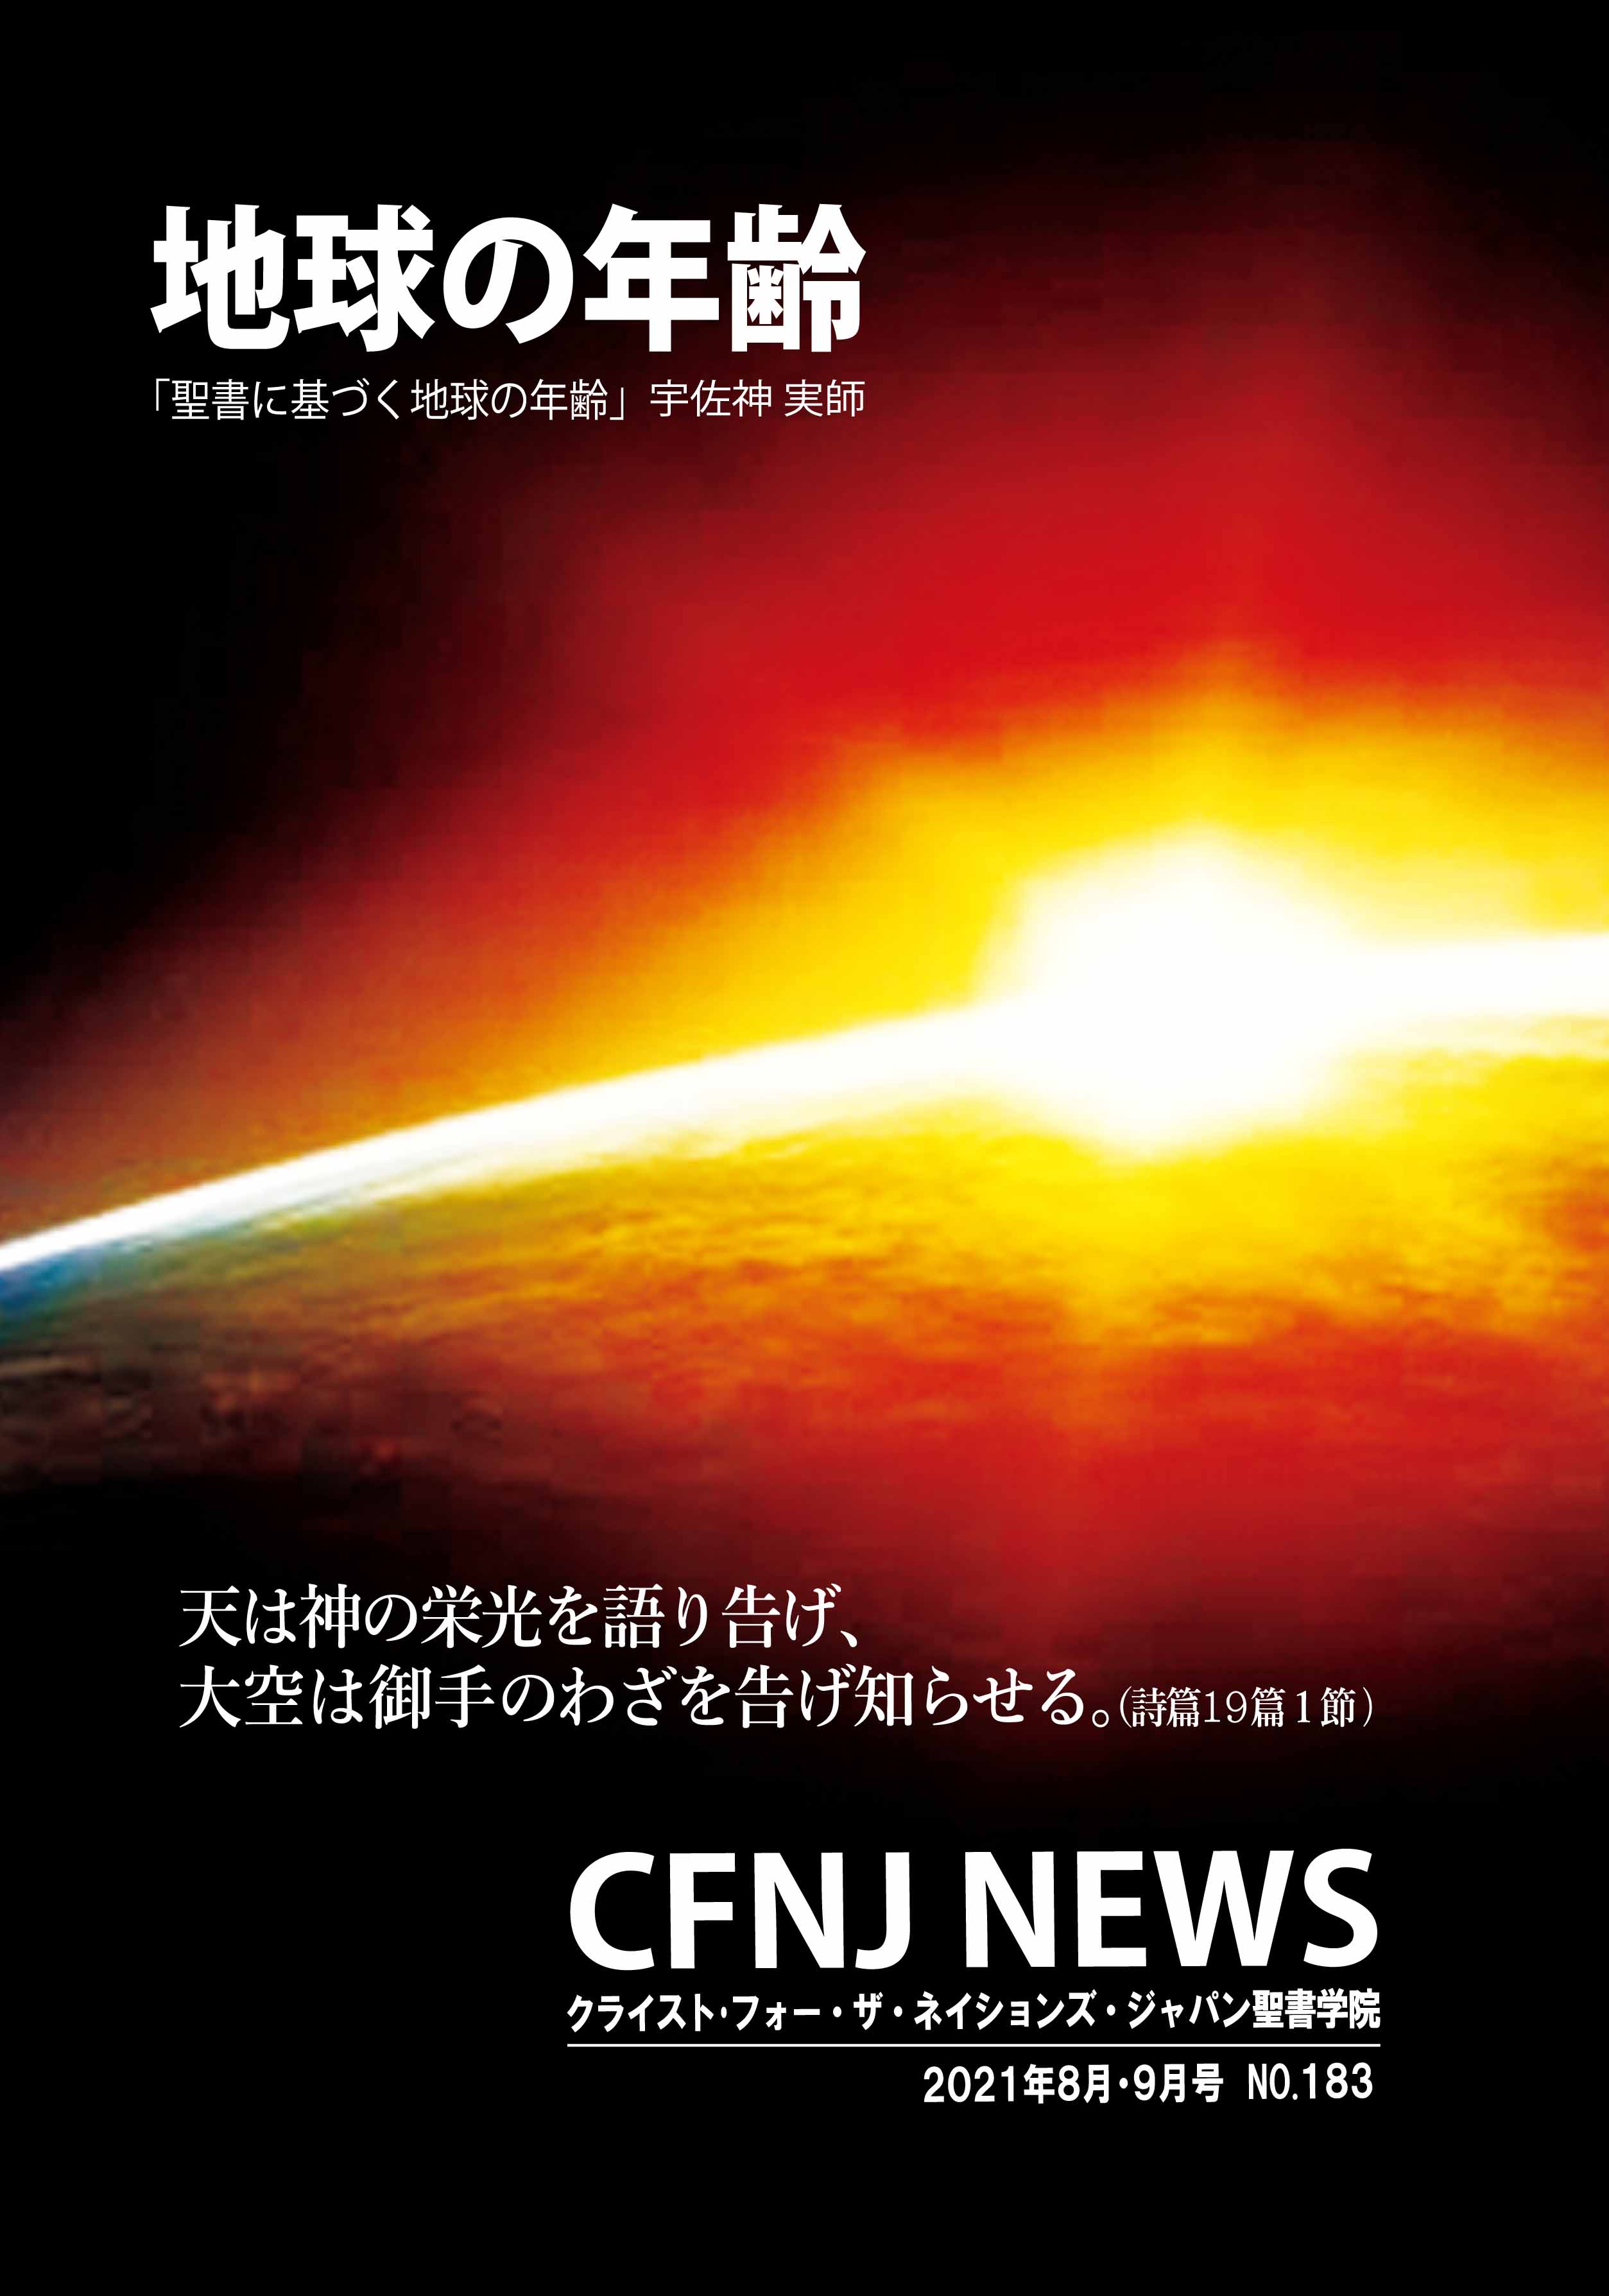 CFNJ NEWS No.183